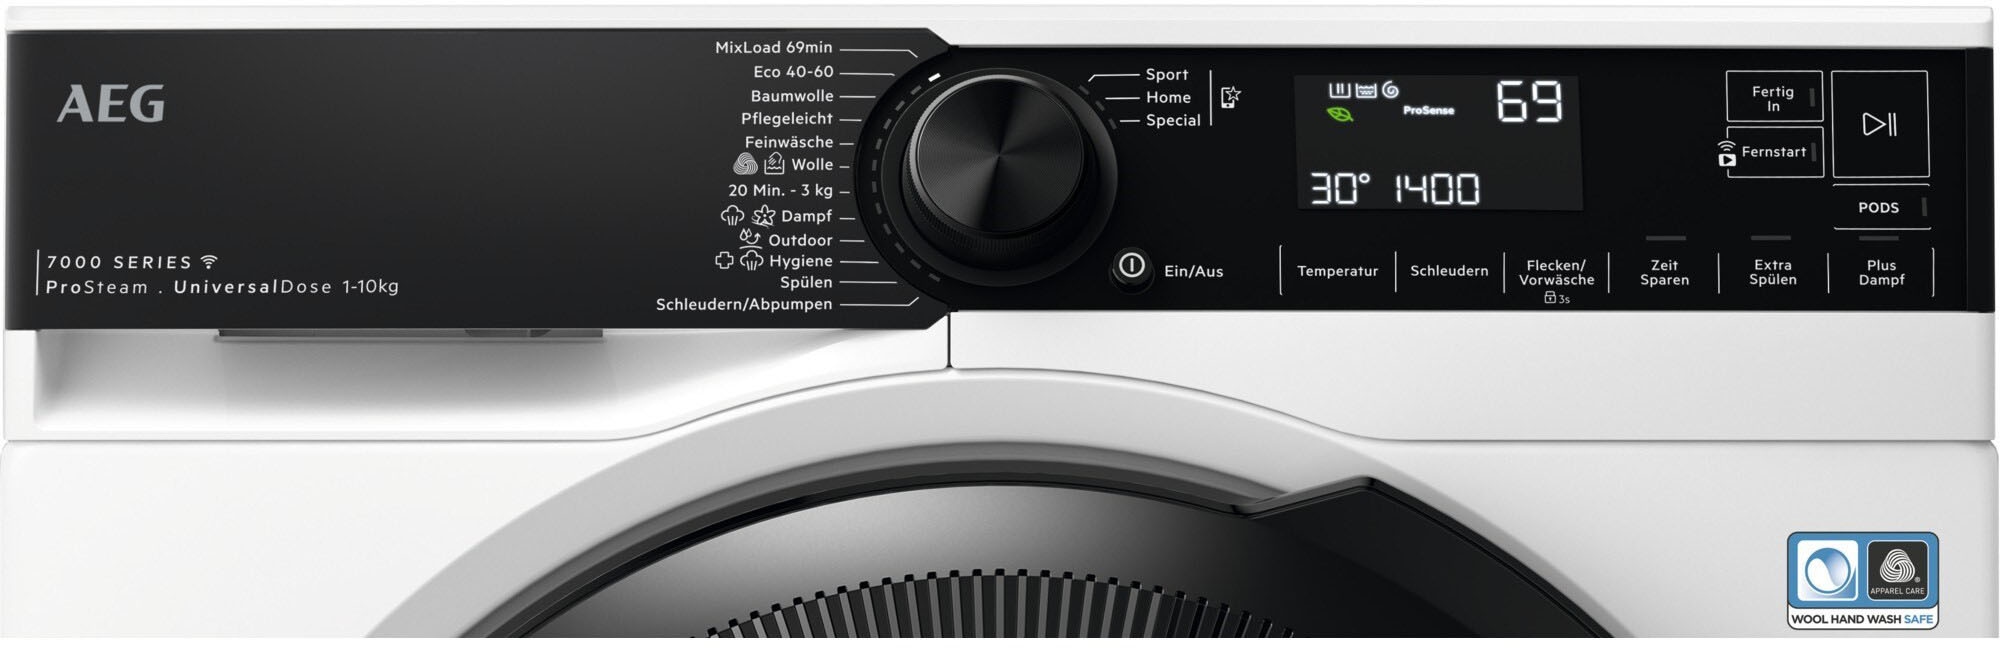 LR7E75400, bestellen & AEG Wifi 1400 Waschmaschine, % online kg, Dampf-Programm Wasserverbrauch ProSteam 10 - U/min, für weniger 96